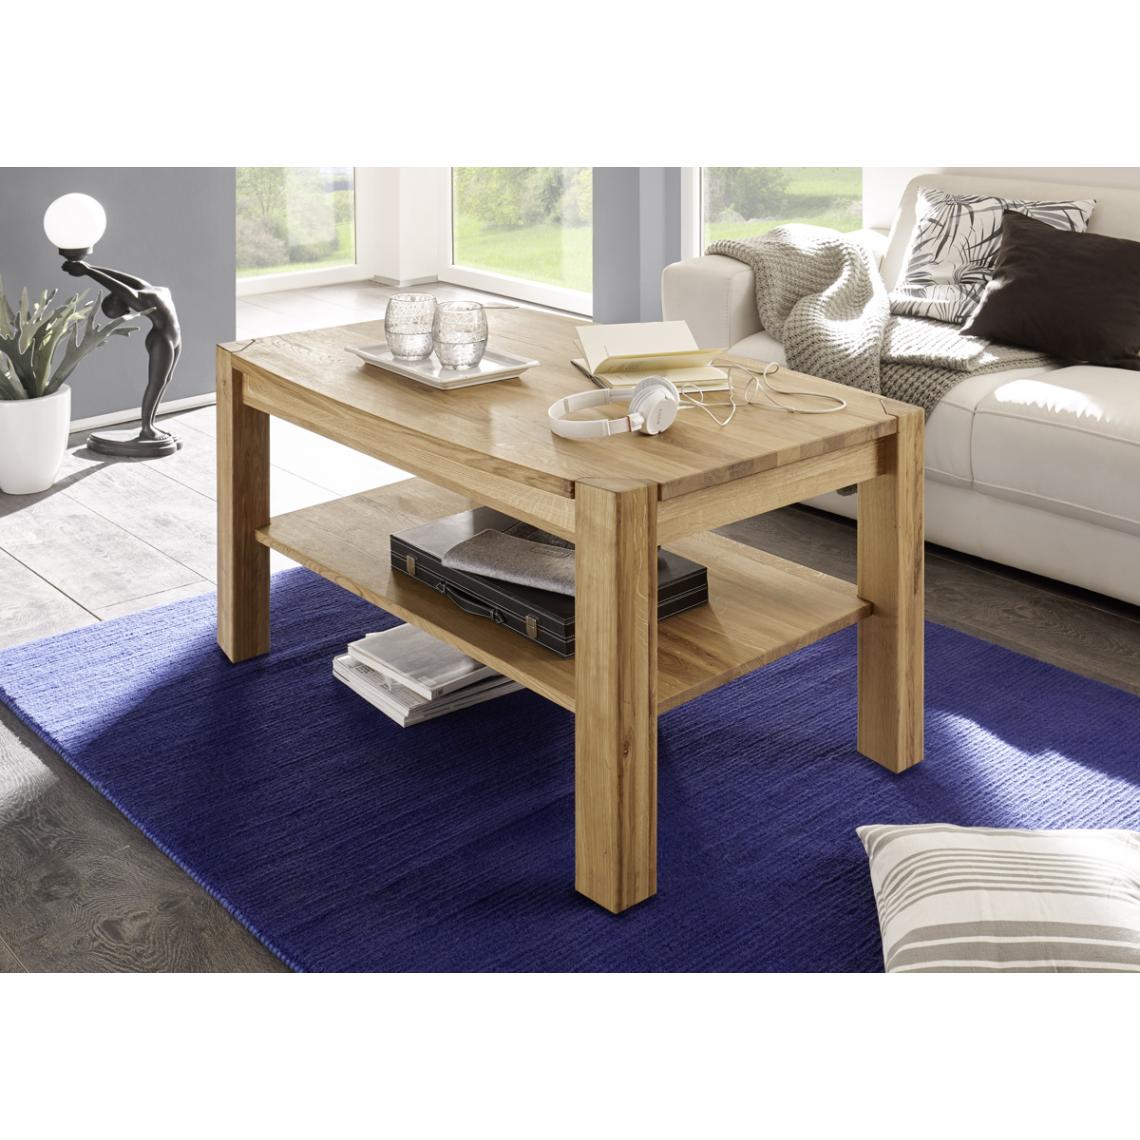 Pegane - Table basse en chêne noueux huilé cire avec tablette - L110 x H55 x P70 cm - Tables basses